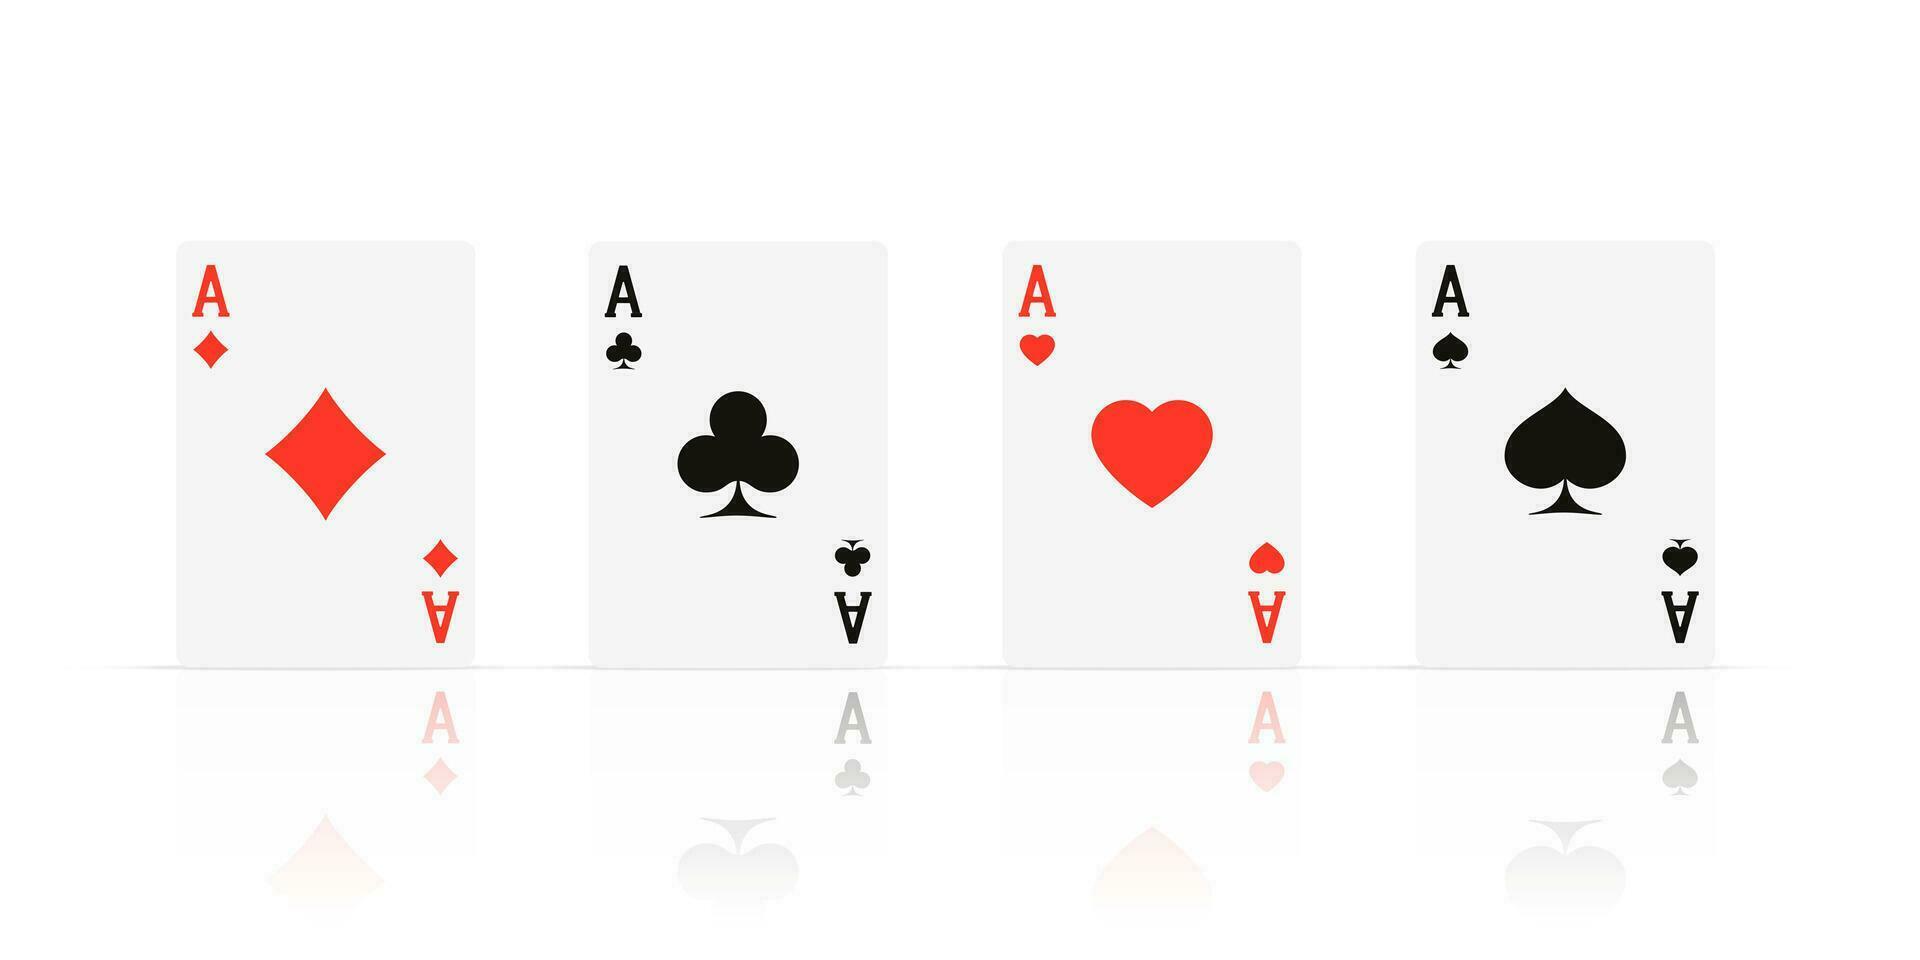 cuádriceps. as diseño cazino juego elemento con transparente reflexión. póker o veintiuna realista tarjeta. vector ilustración